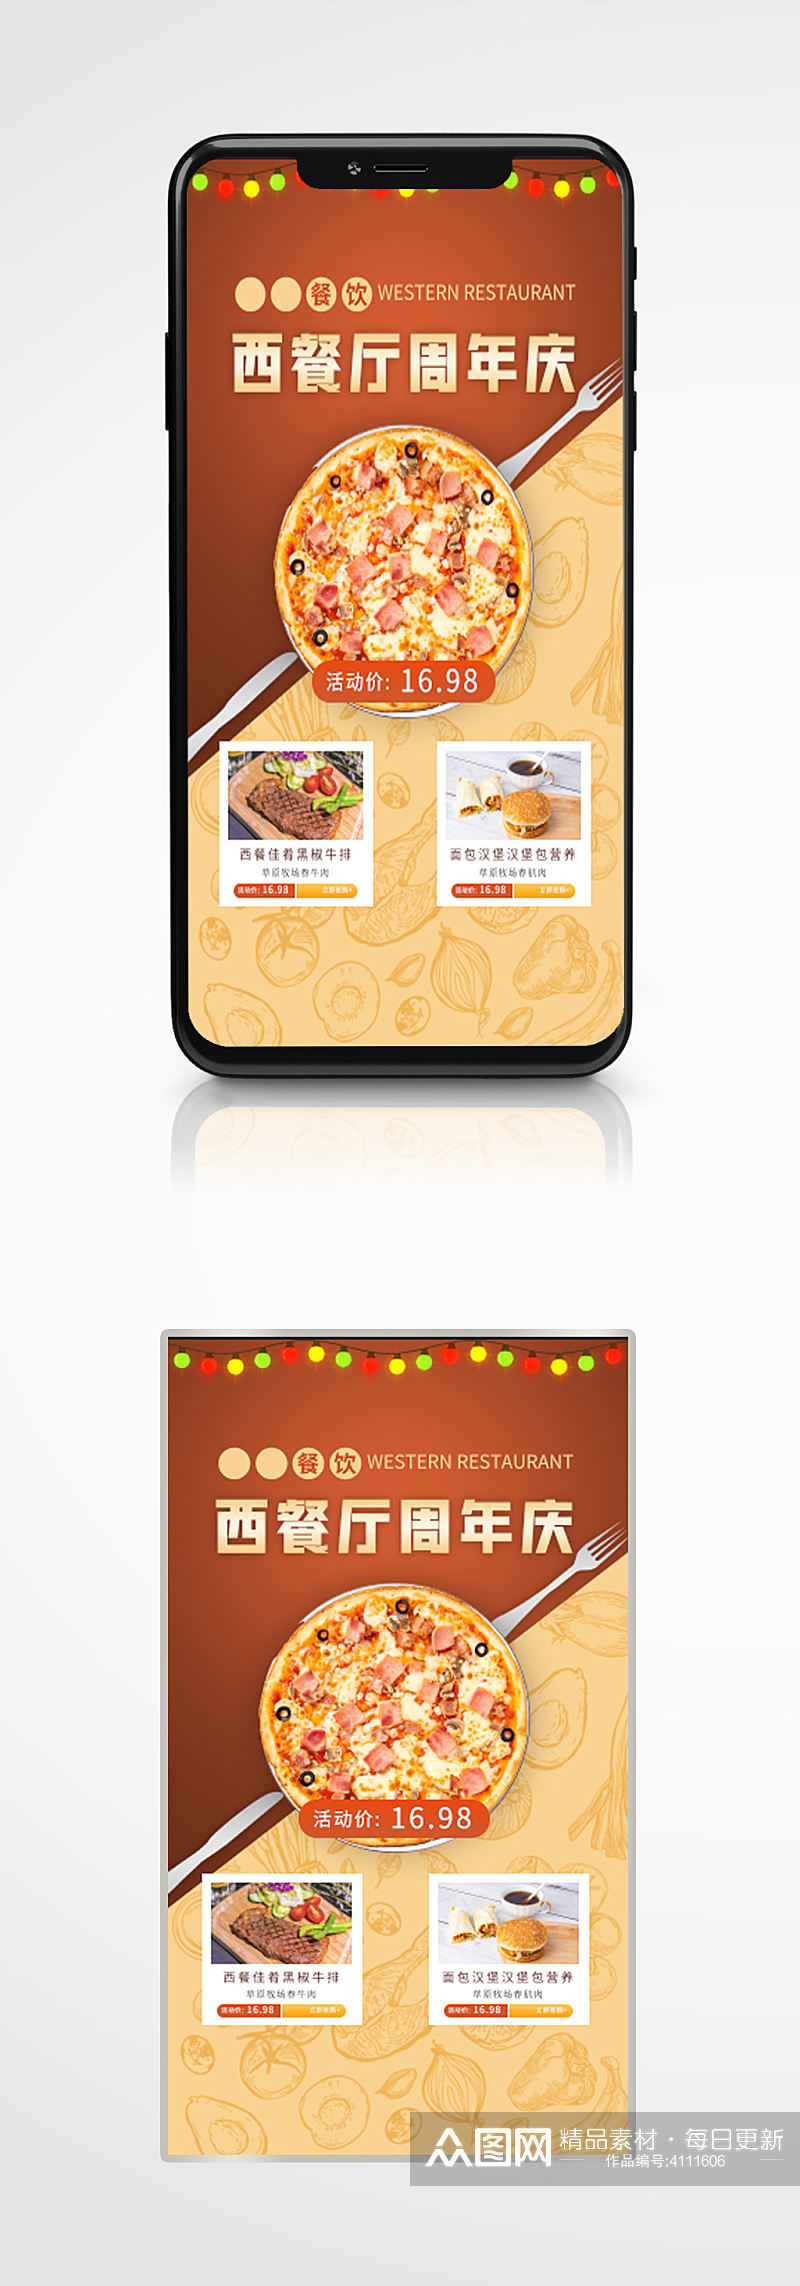 西餐厅周年庆活动营销手机海报餐厅套餐素材